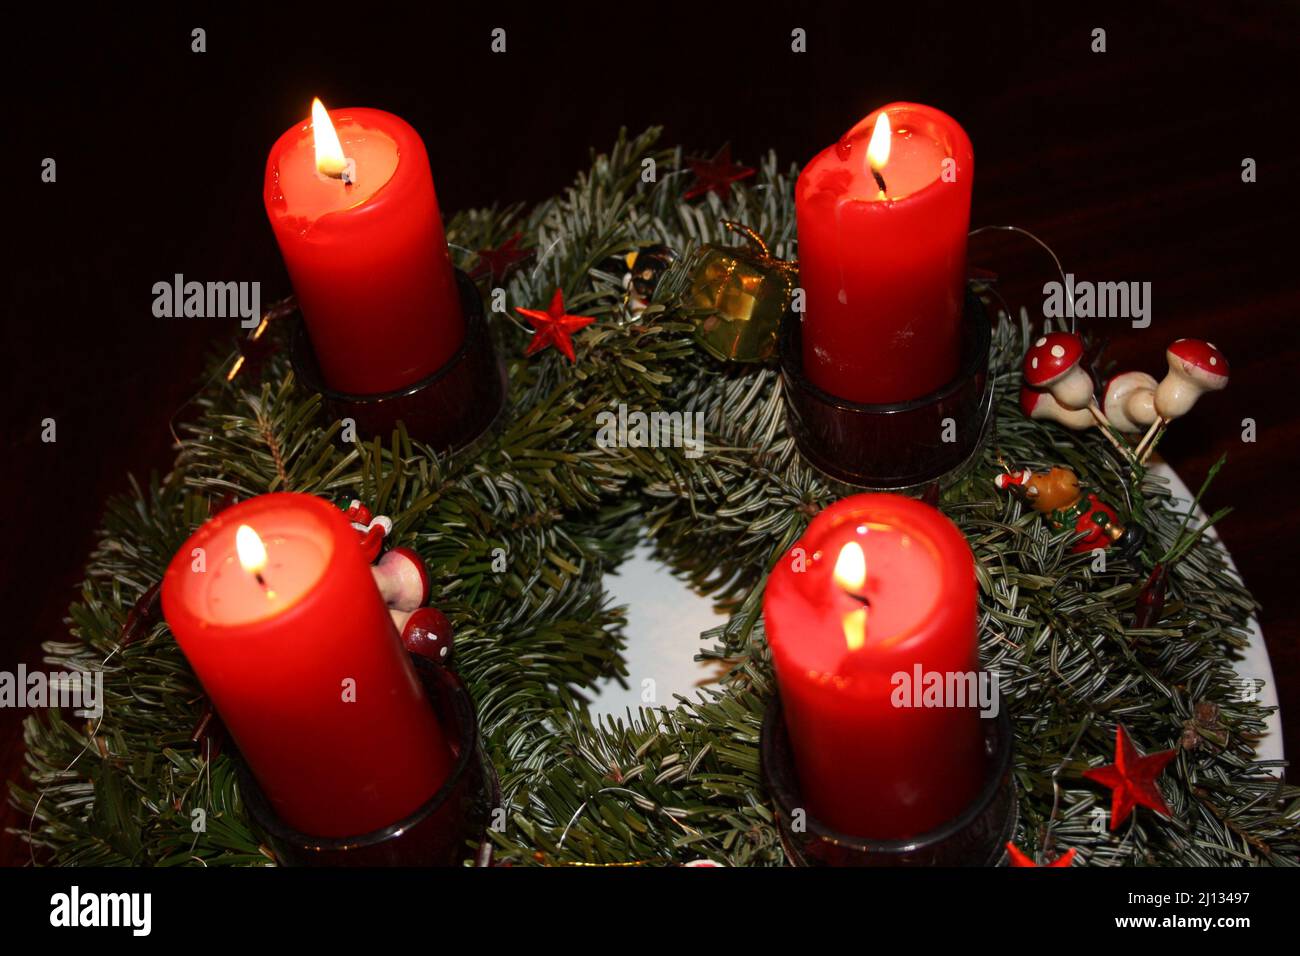 Corona de Adviento en el cuarto Adviento con 4 velas rojas encendidas Foto de stock